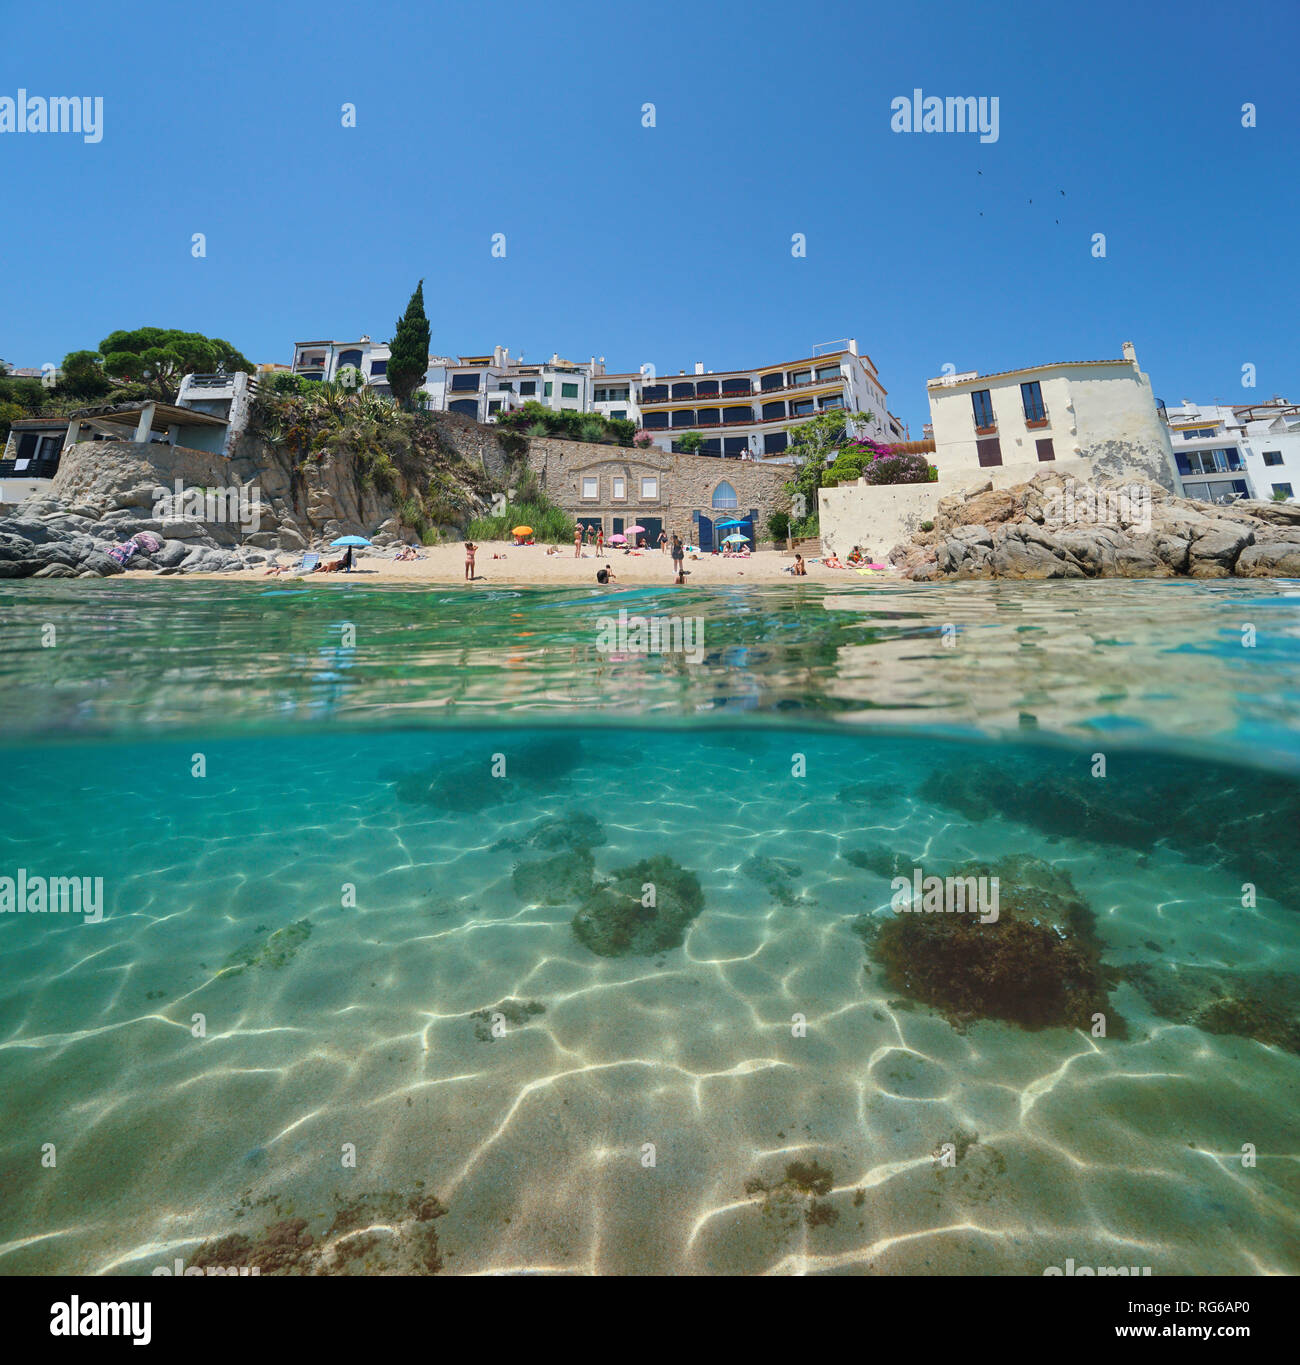 Espagne plage de Calella de Palafrugell, village partagé moitié sur et sous l'eau, Costa Brava, Catalogne, mer Méditerranée Banque D'Images